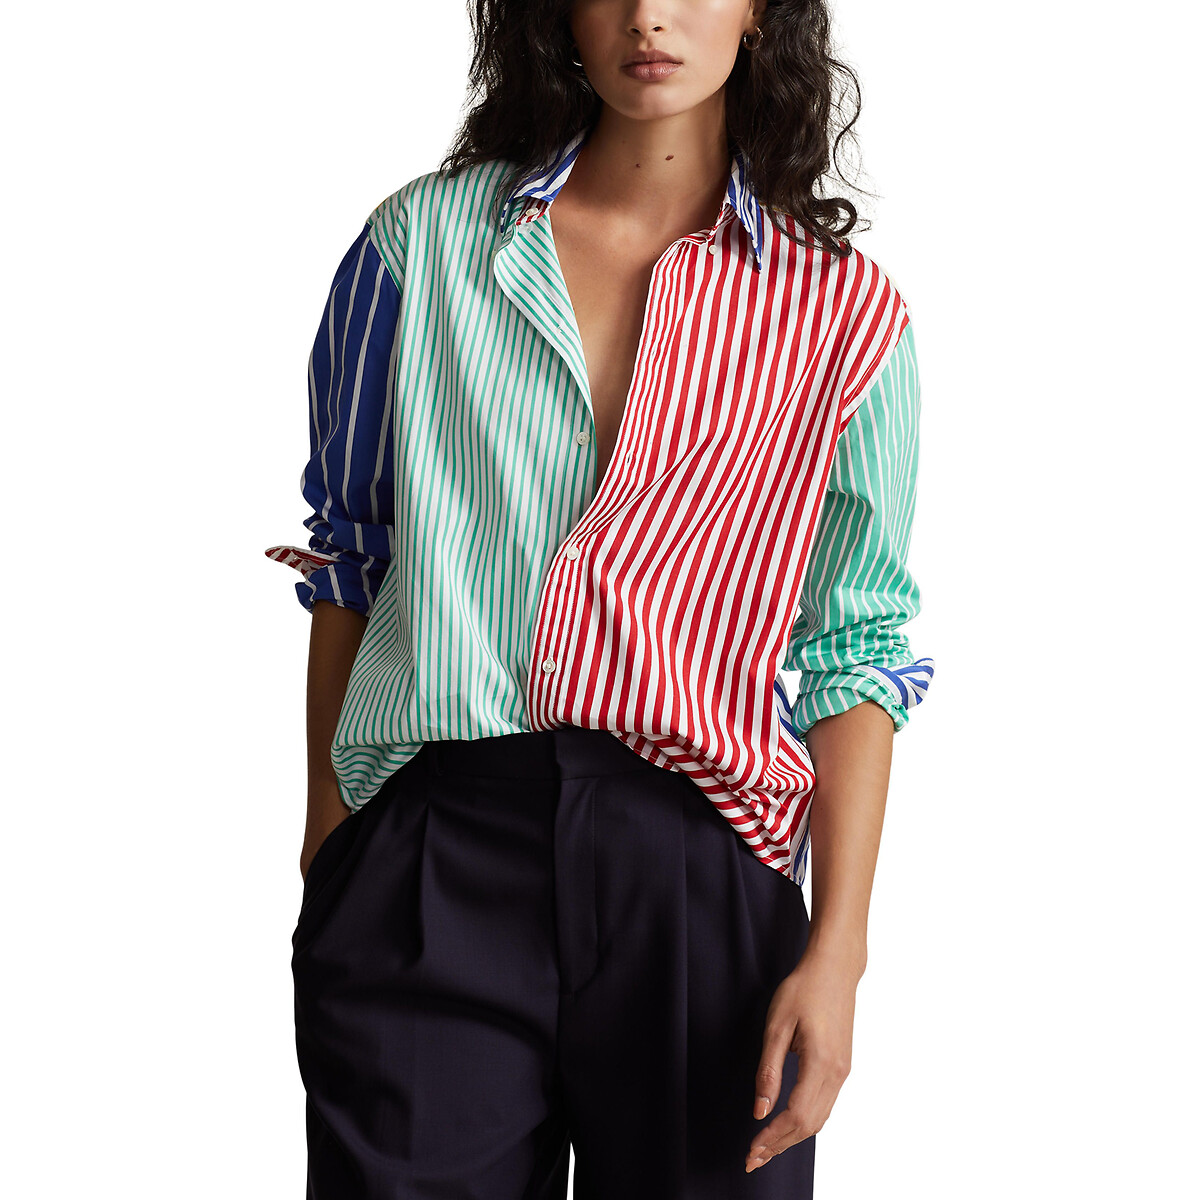 Рубашка прямая в разноцветную полоску 38 (FR) - 44 (RUS) синий цена и фото